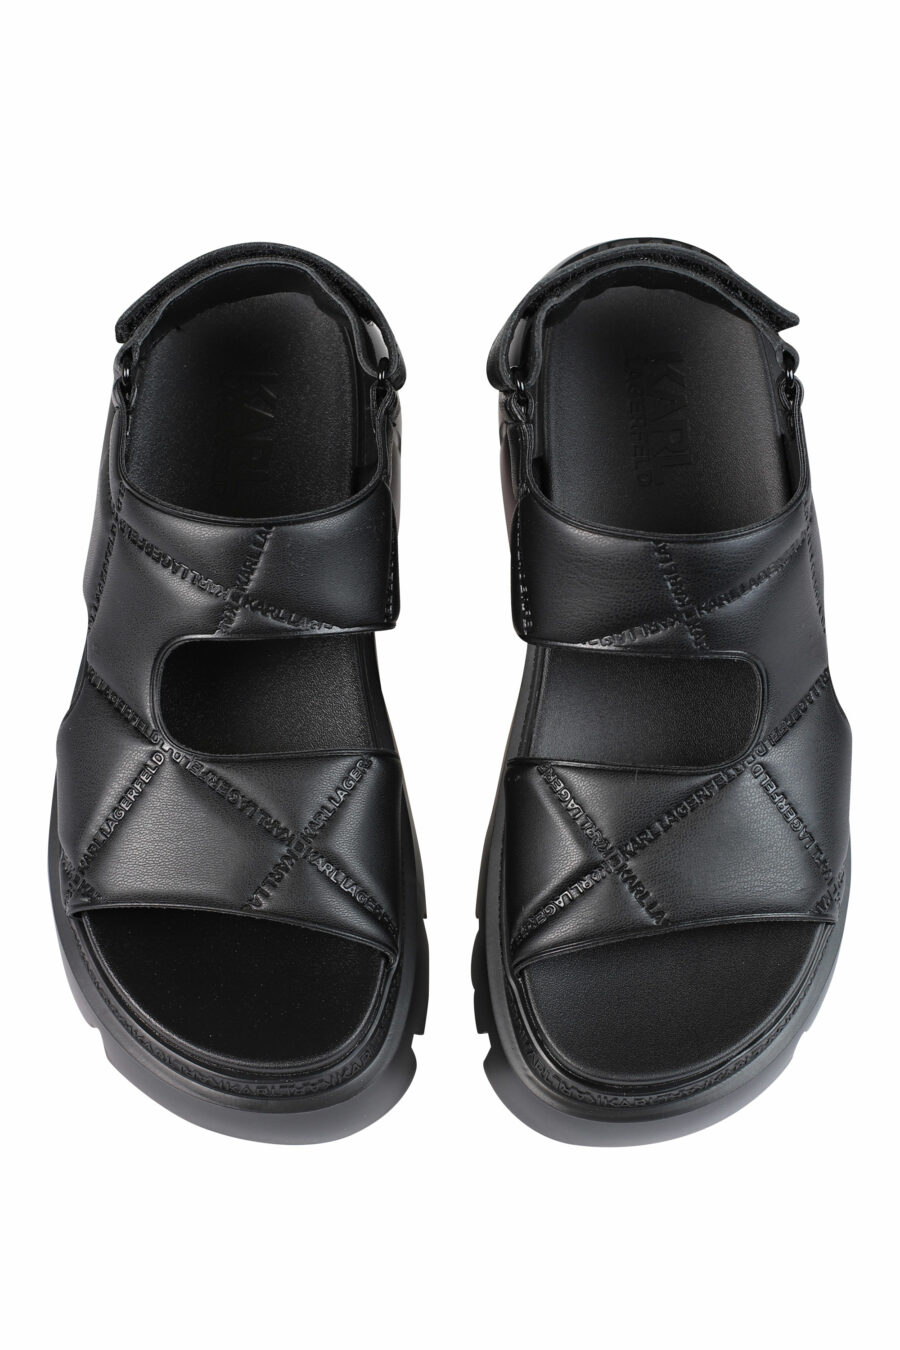 Sandales coussinées noires avec plateforme et logo - 5059529245381 5